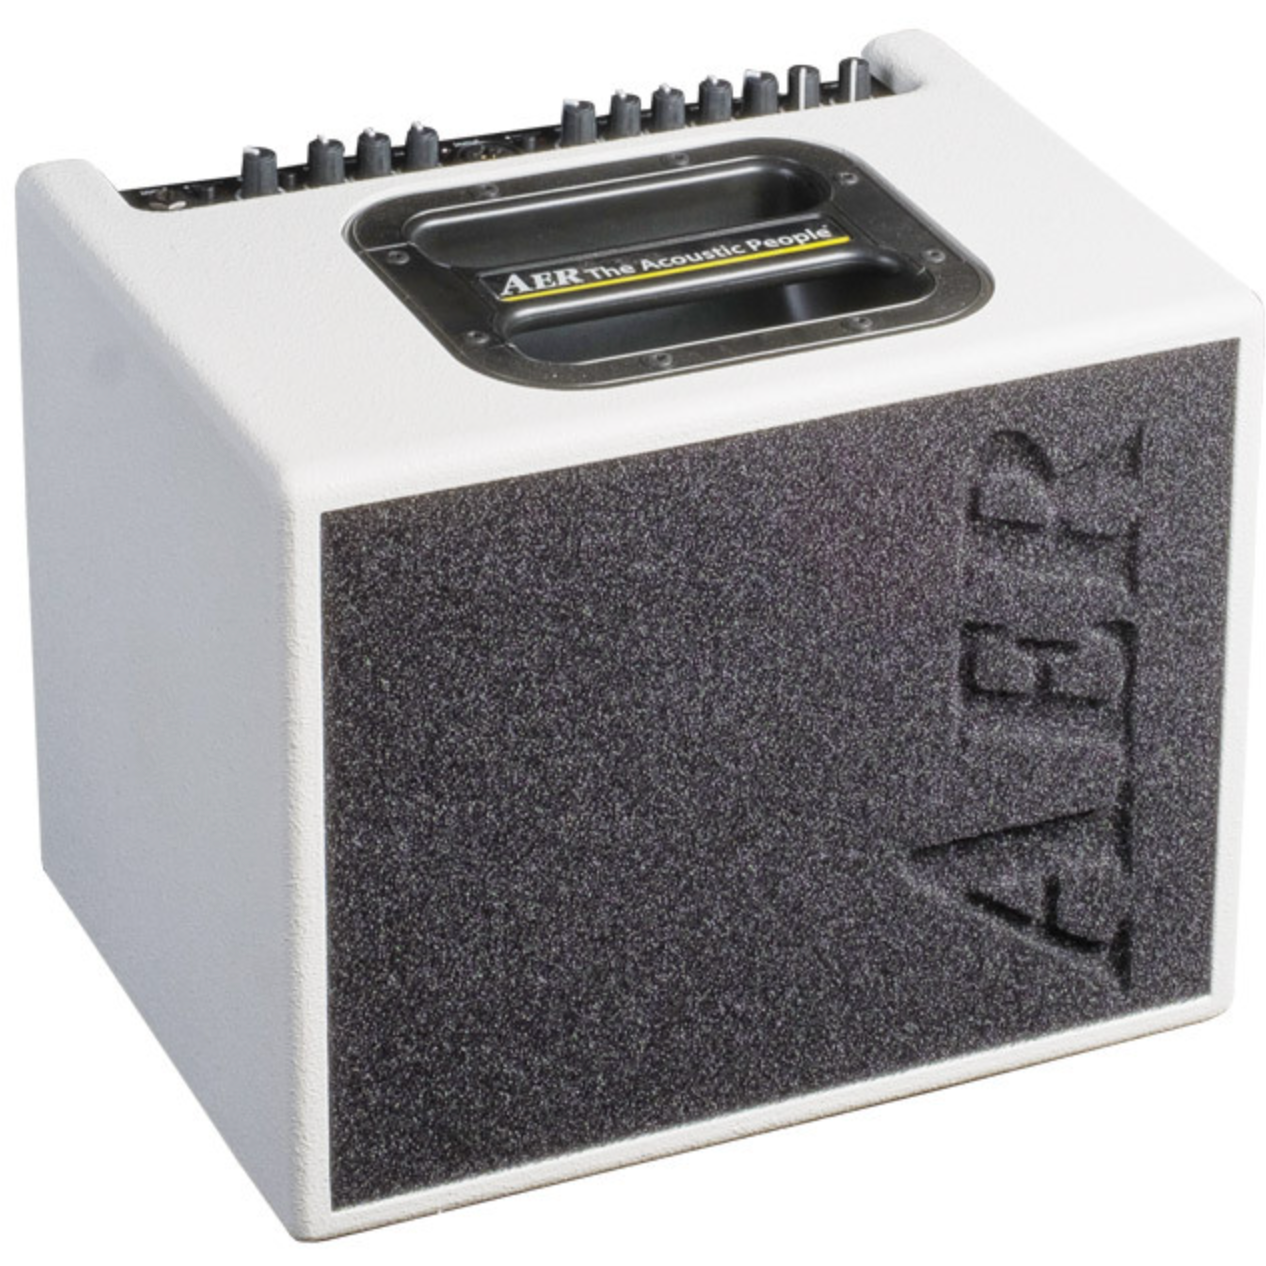 AER Compact 60/4 - White Splatter